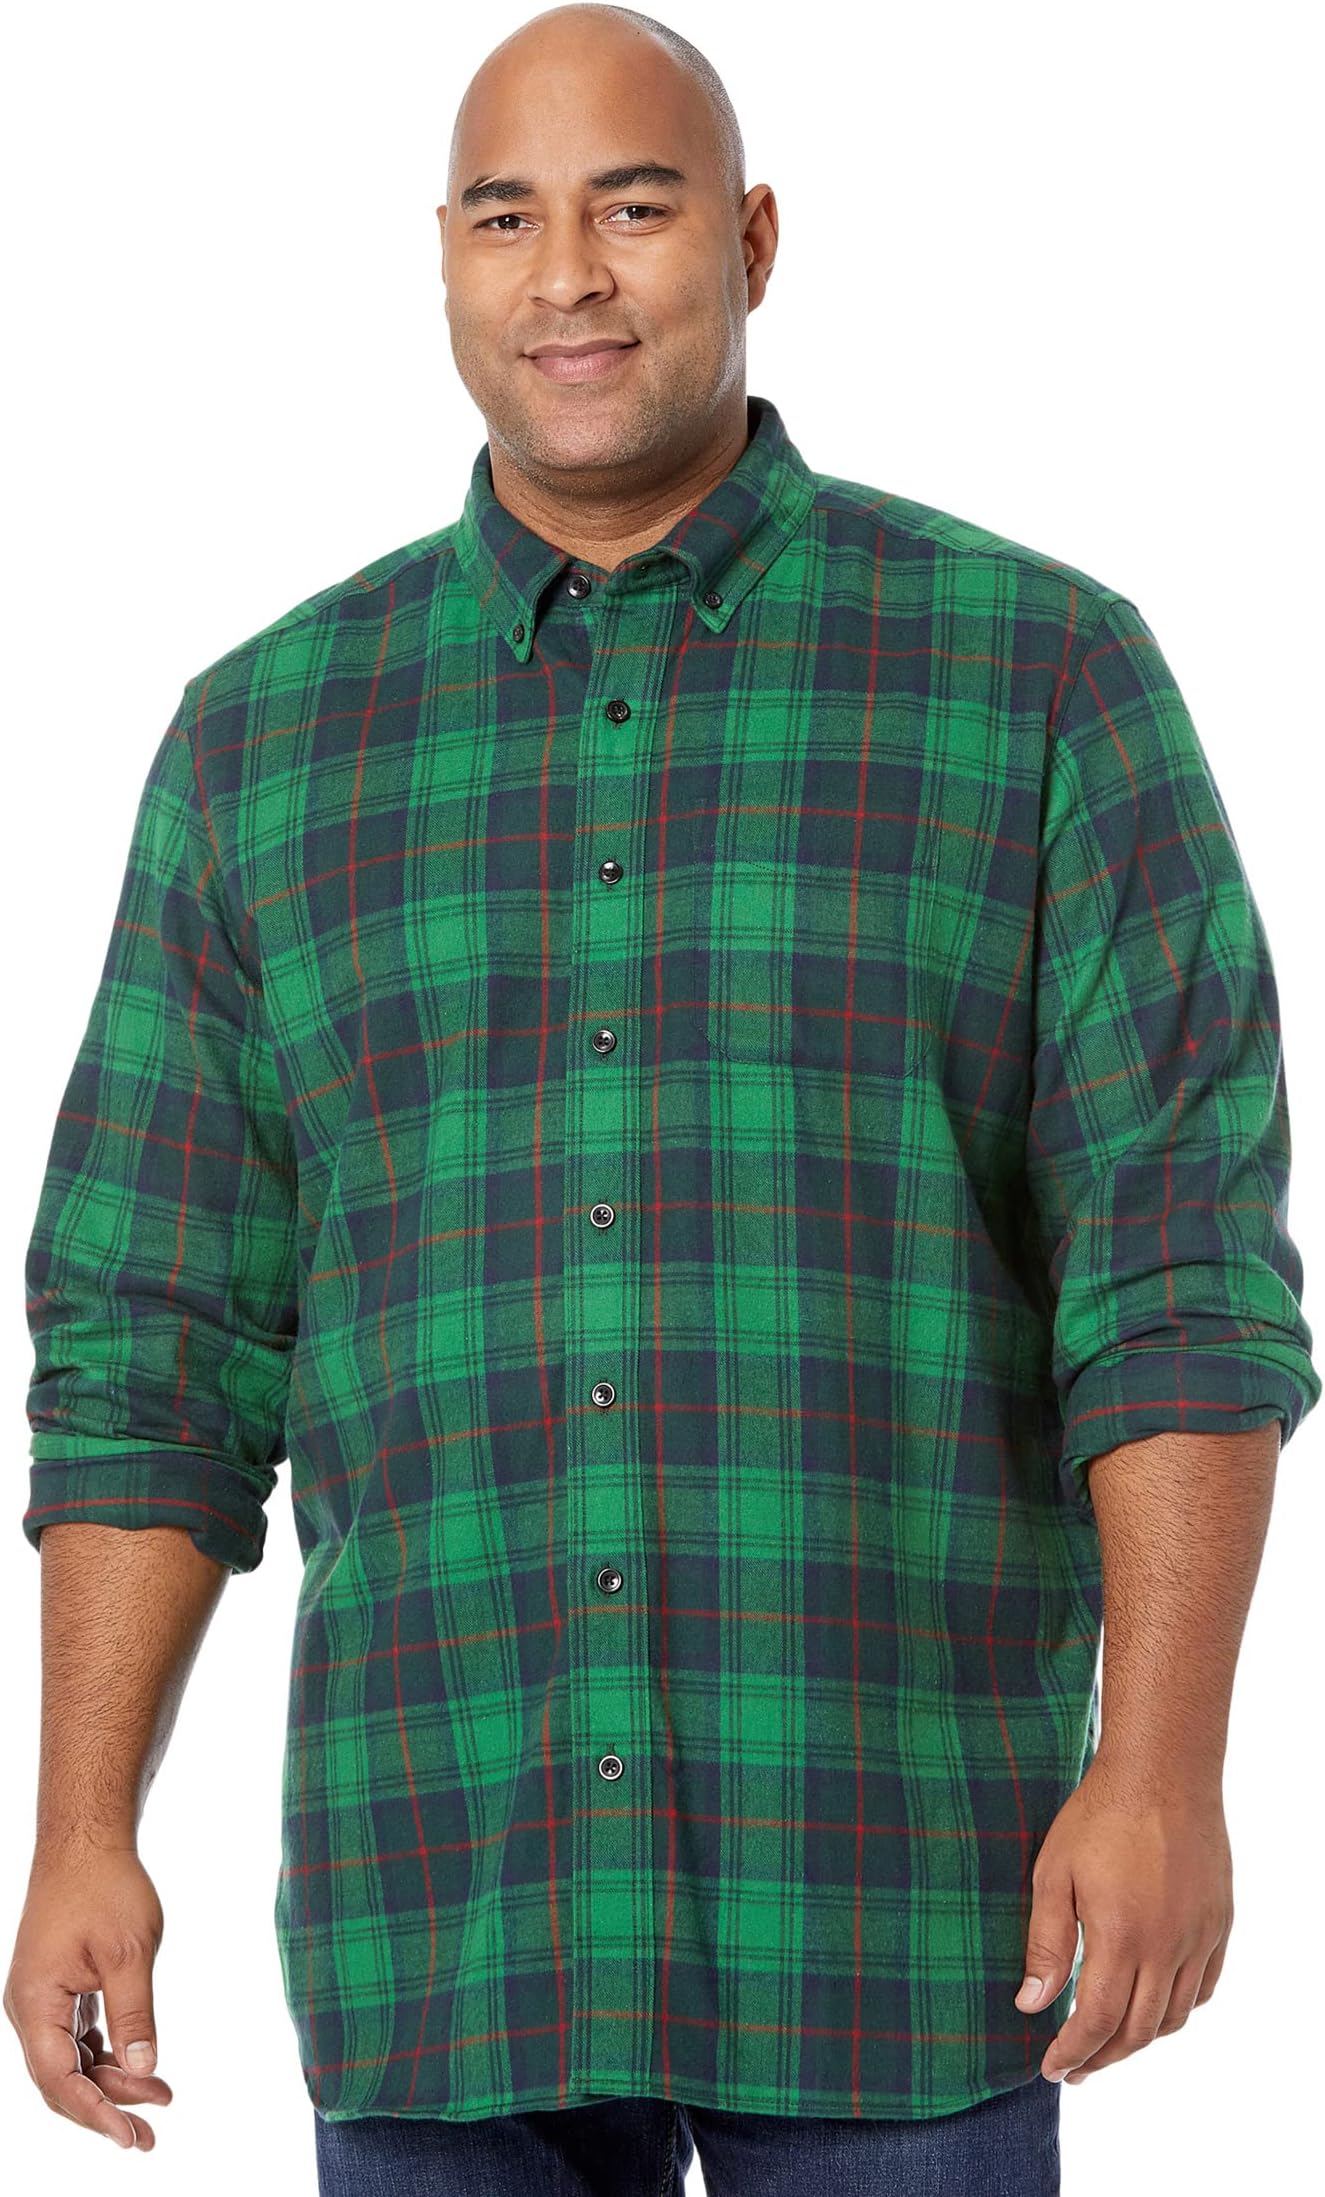 Рубашка традиционного кроя из шотландской фланели в шотландскую клетку – высокий L.L.Bean, цвет Cranston